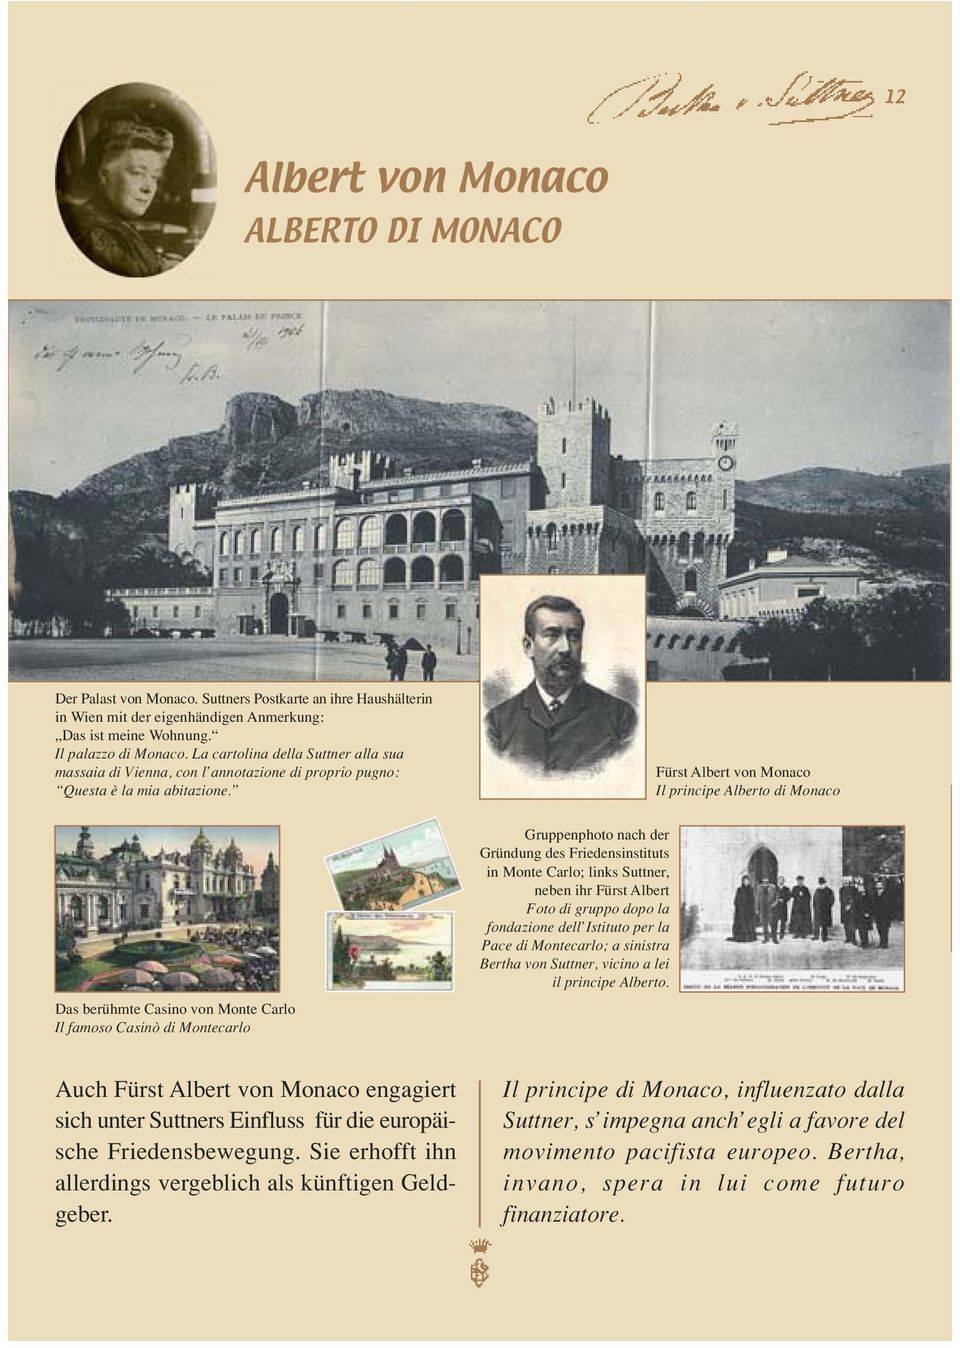 Fürst Albert von Monaco Il principe Alberto di Monaco Das berühmte Casino von Monte Carlo Il famoso Casinò di Montecarlo Gruppenphoto nach der Gründung des Friedensinstituts in Monte Carlo; links